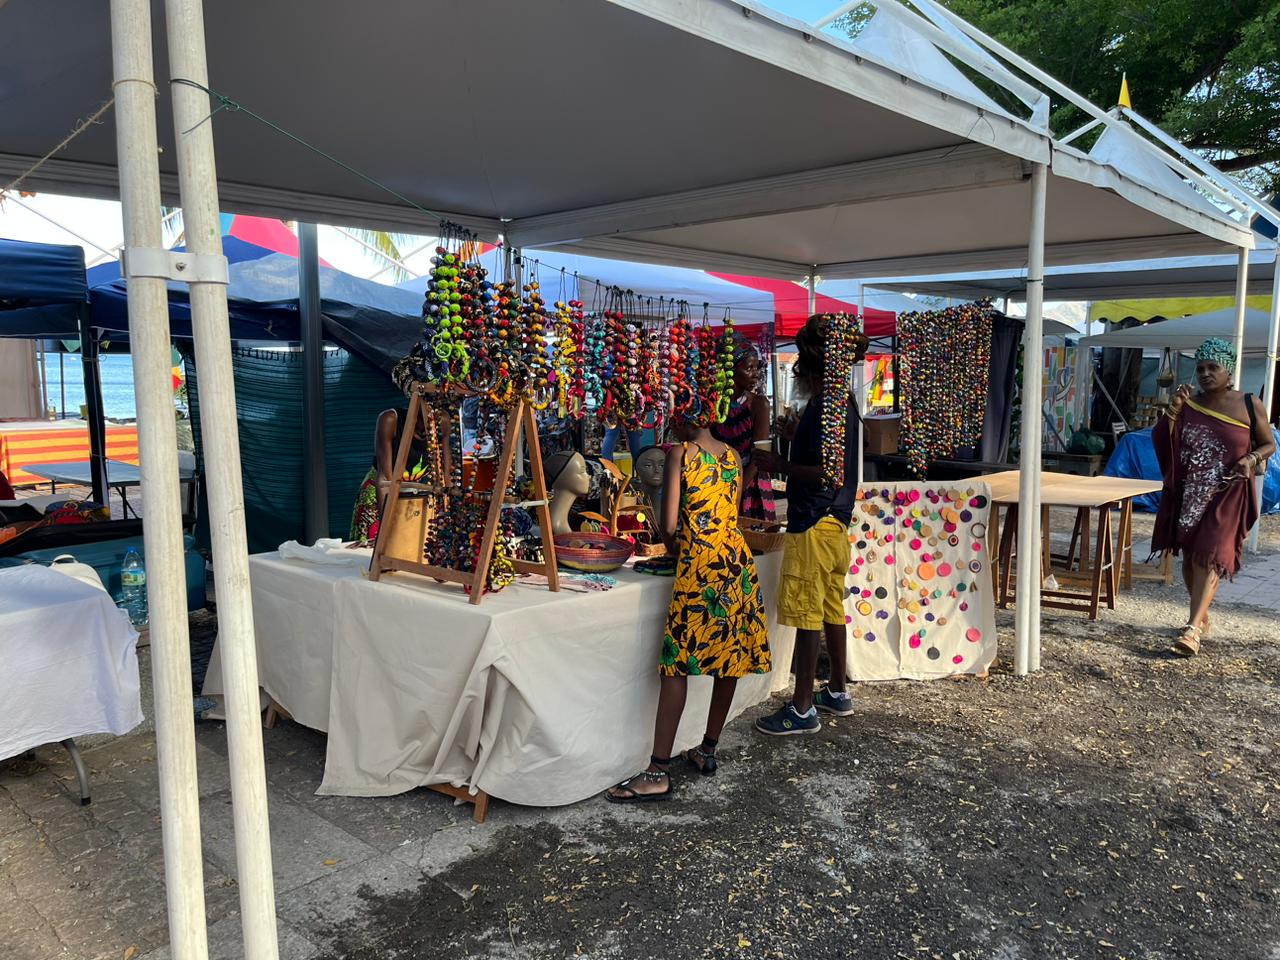     Le marché Rasta de Saint-Pierre est de retour cette année

